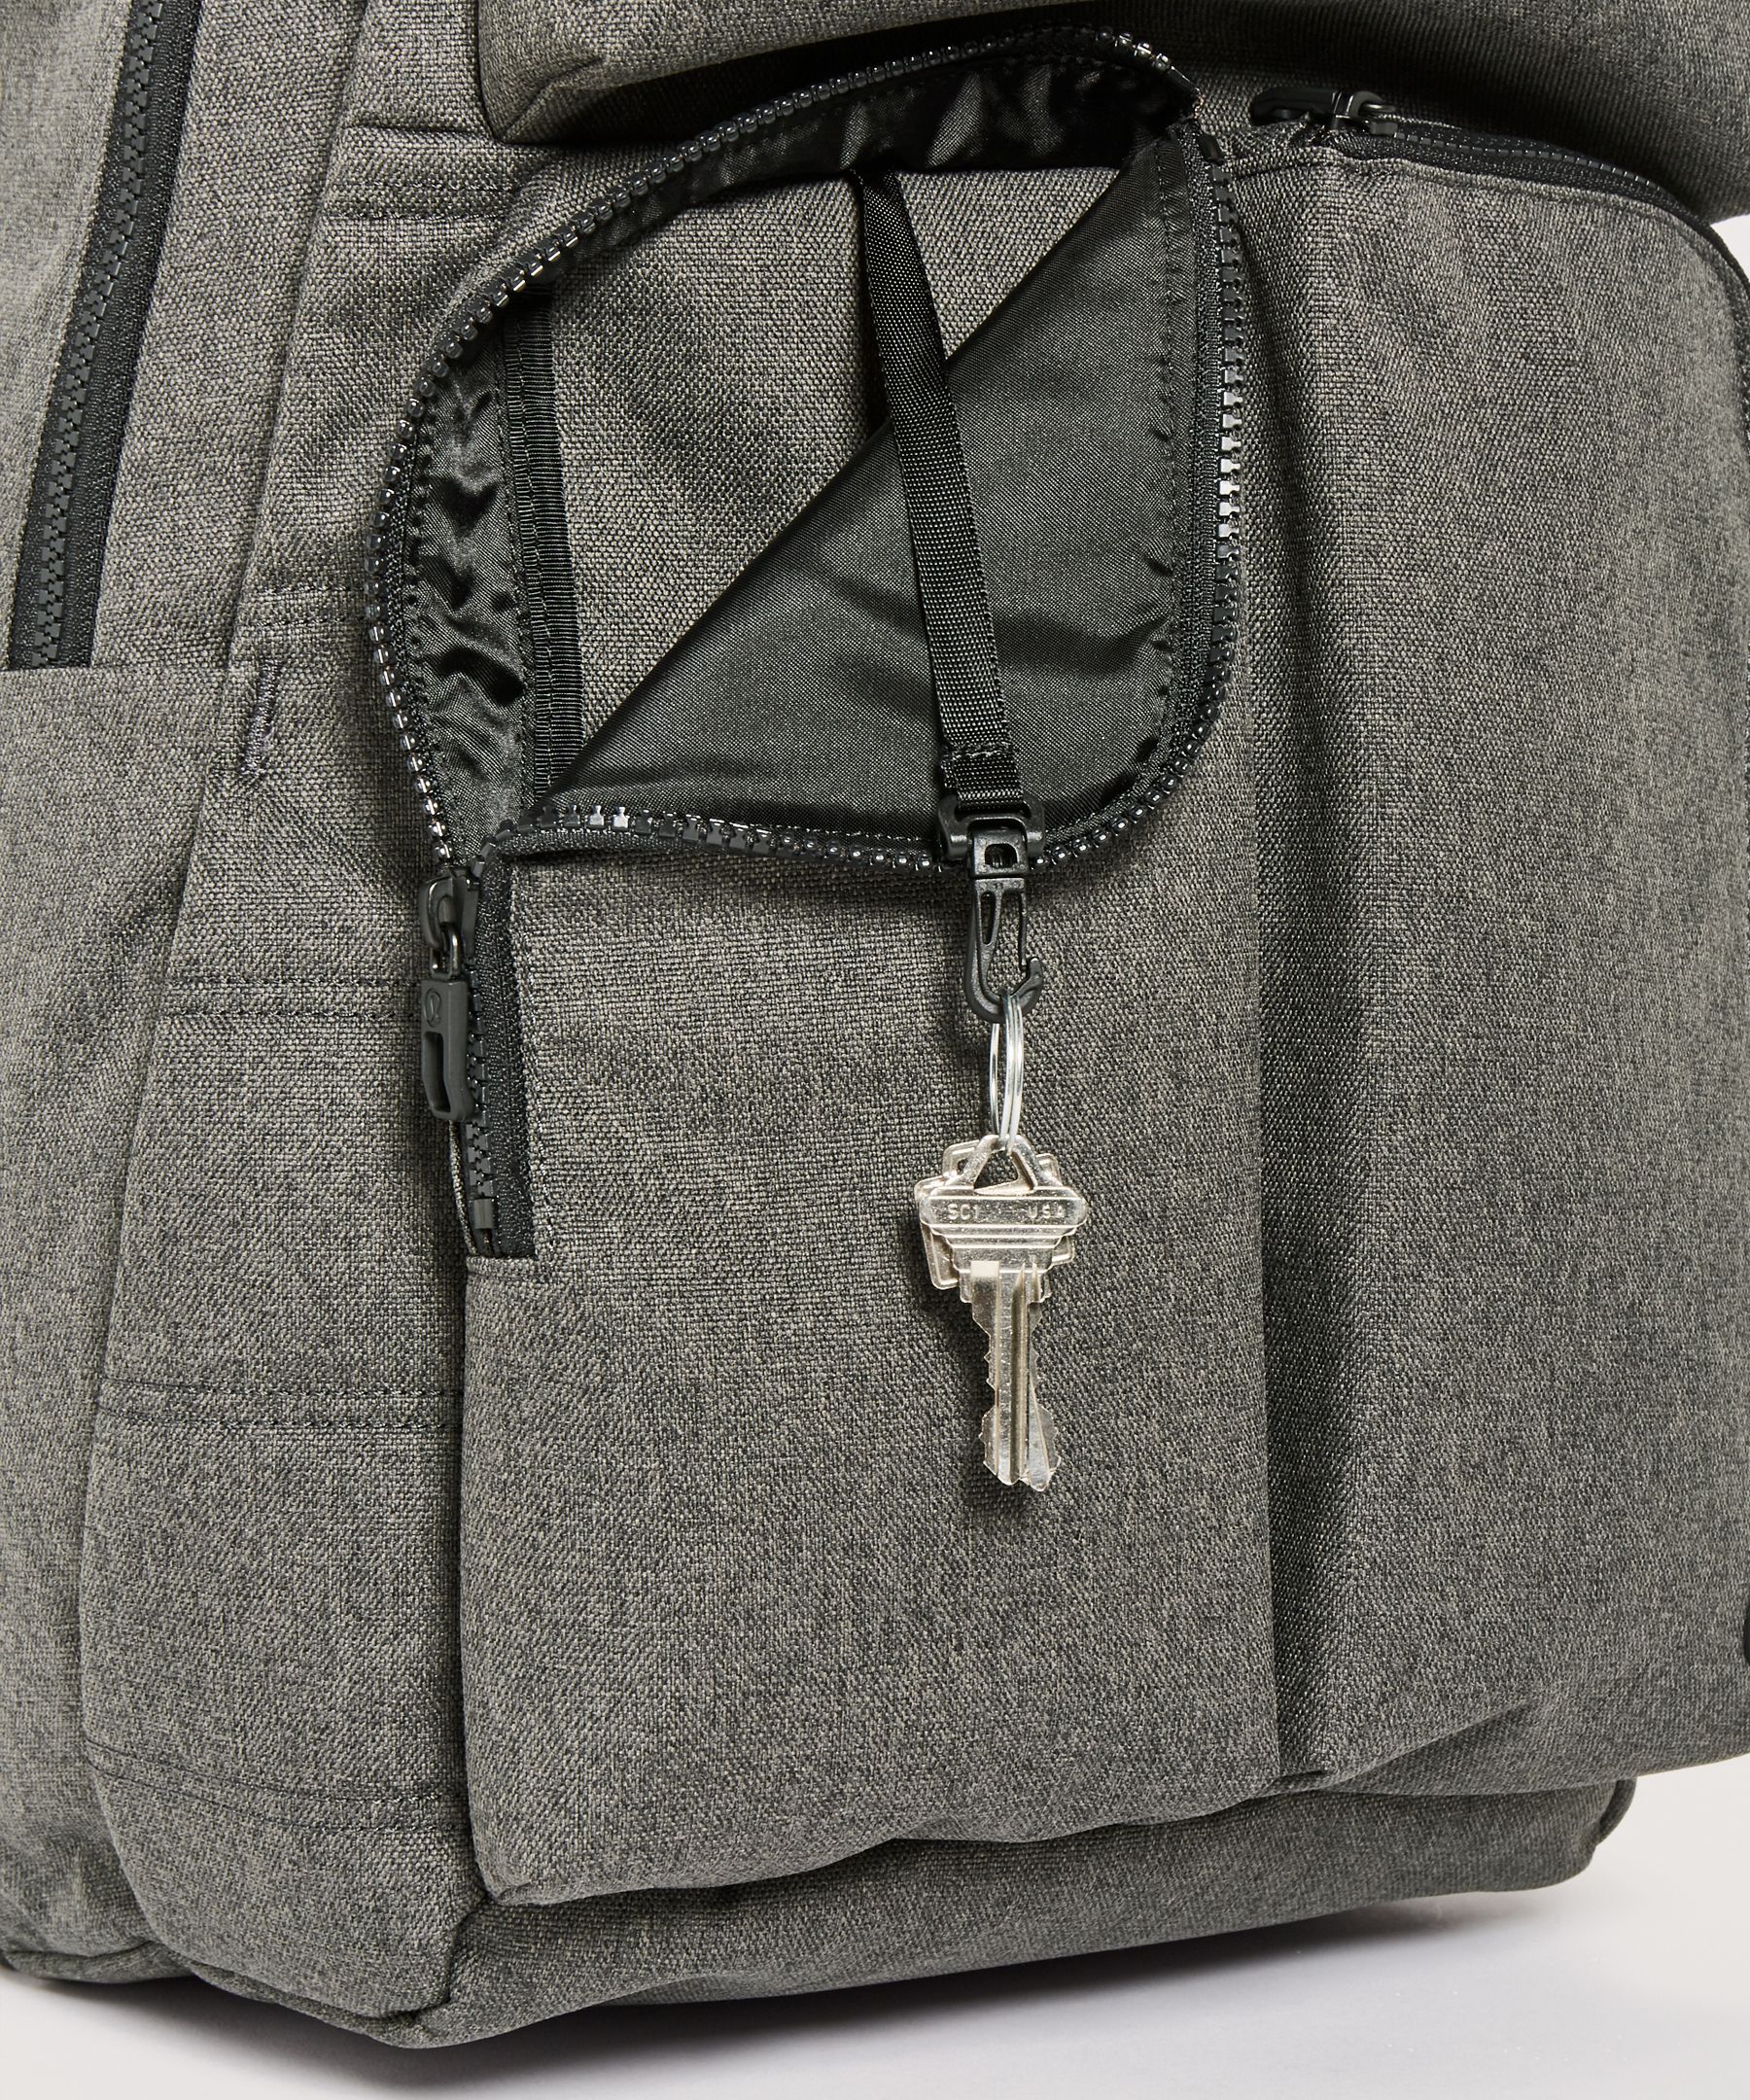 assert backpack lululemon